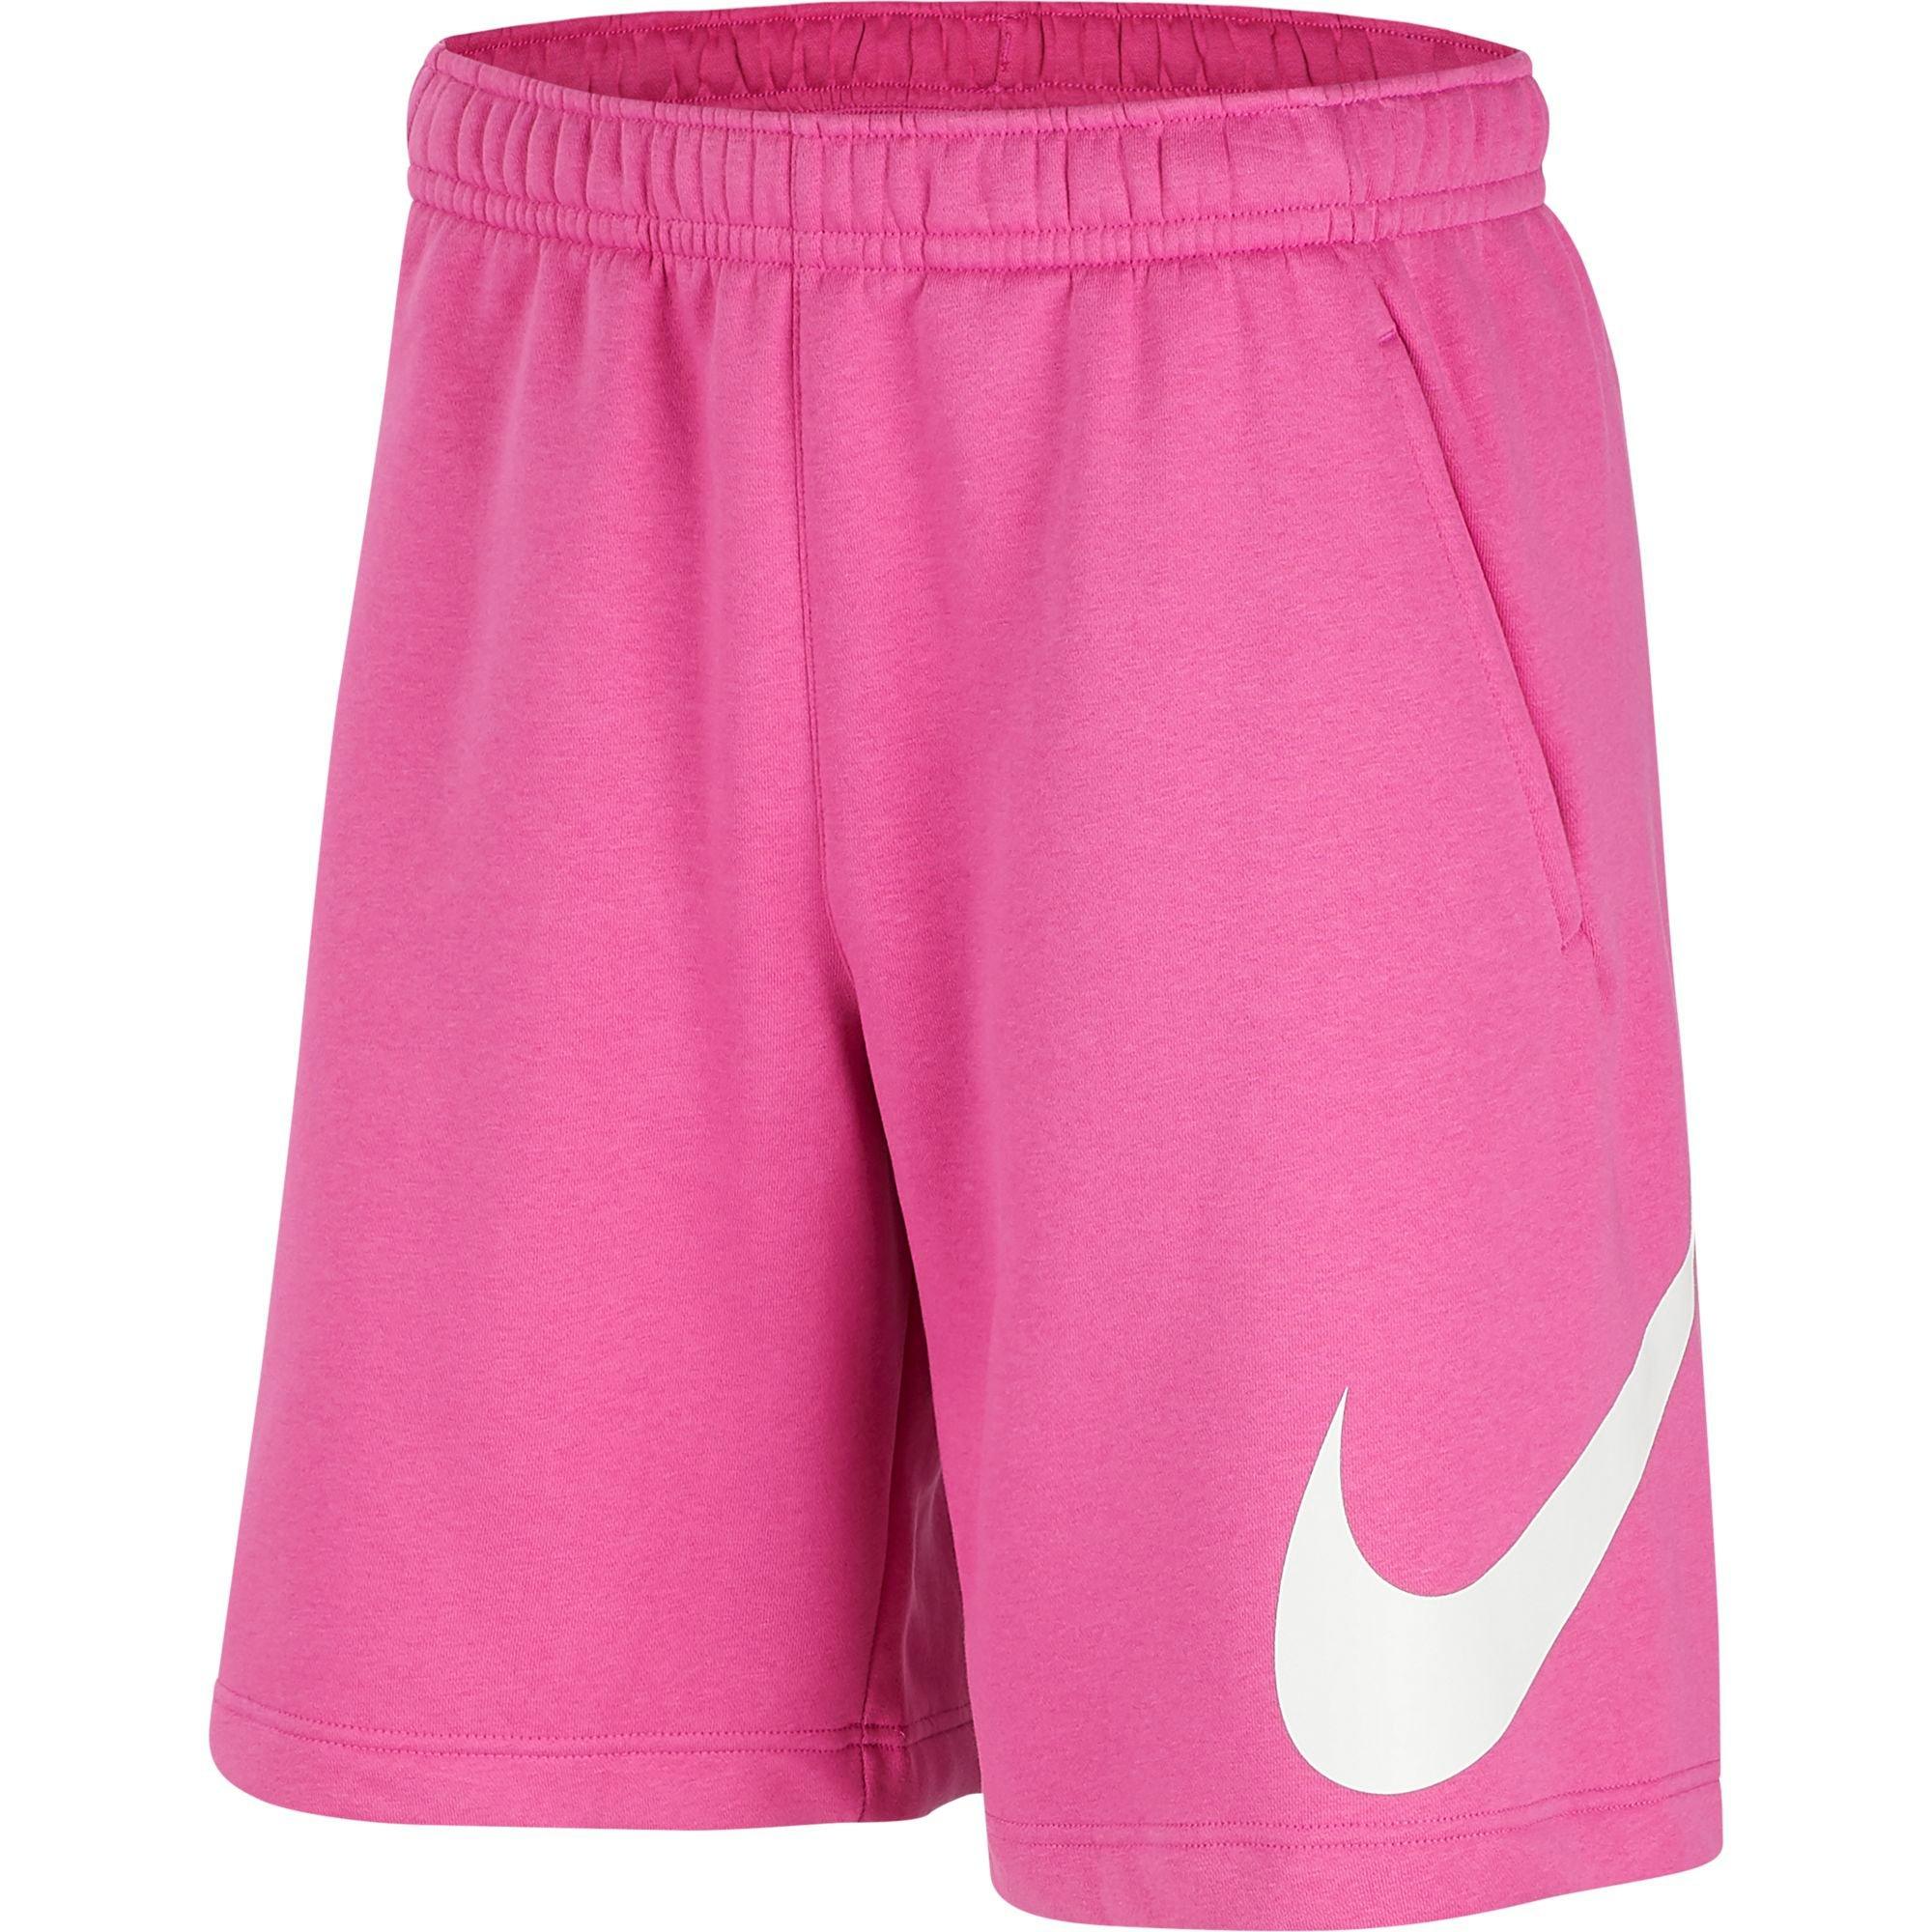 nike men's pink shorts